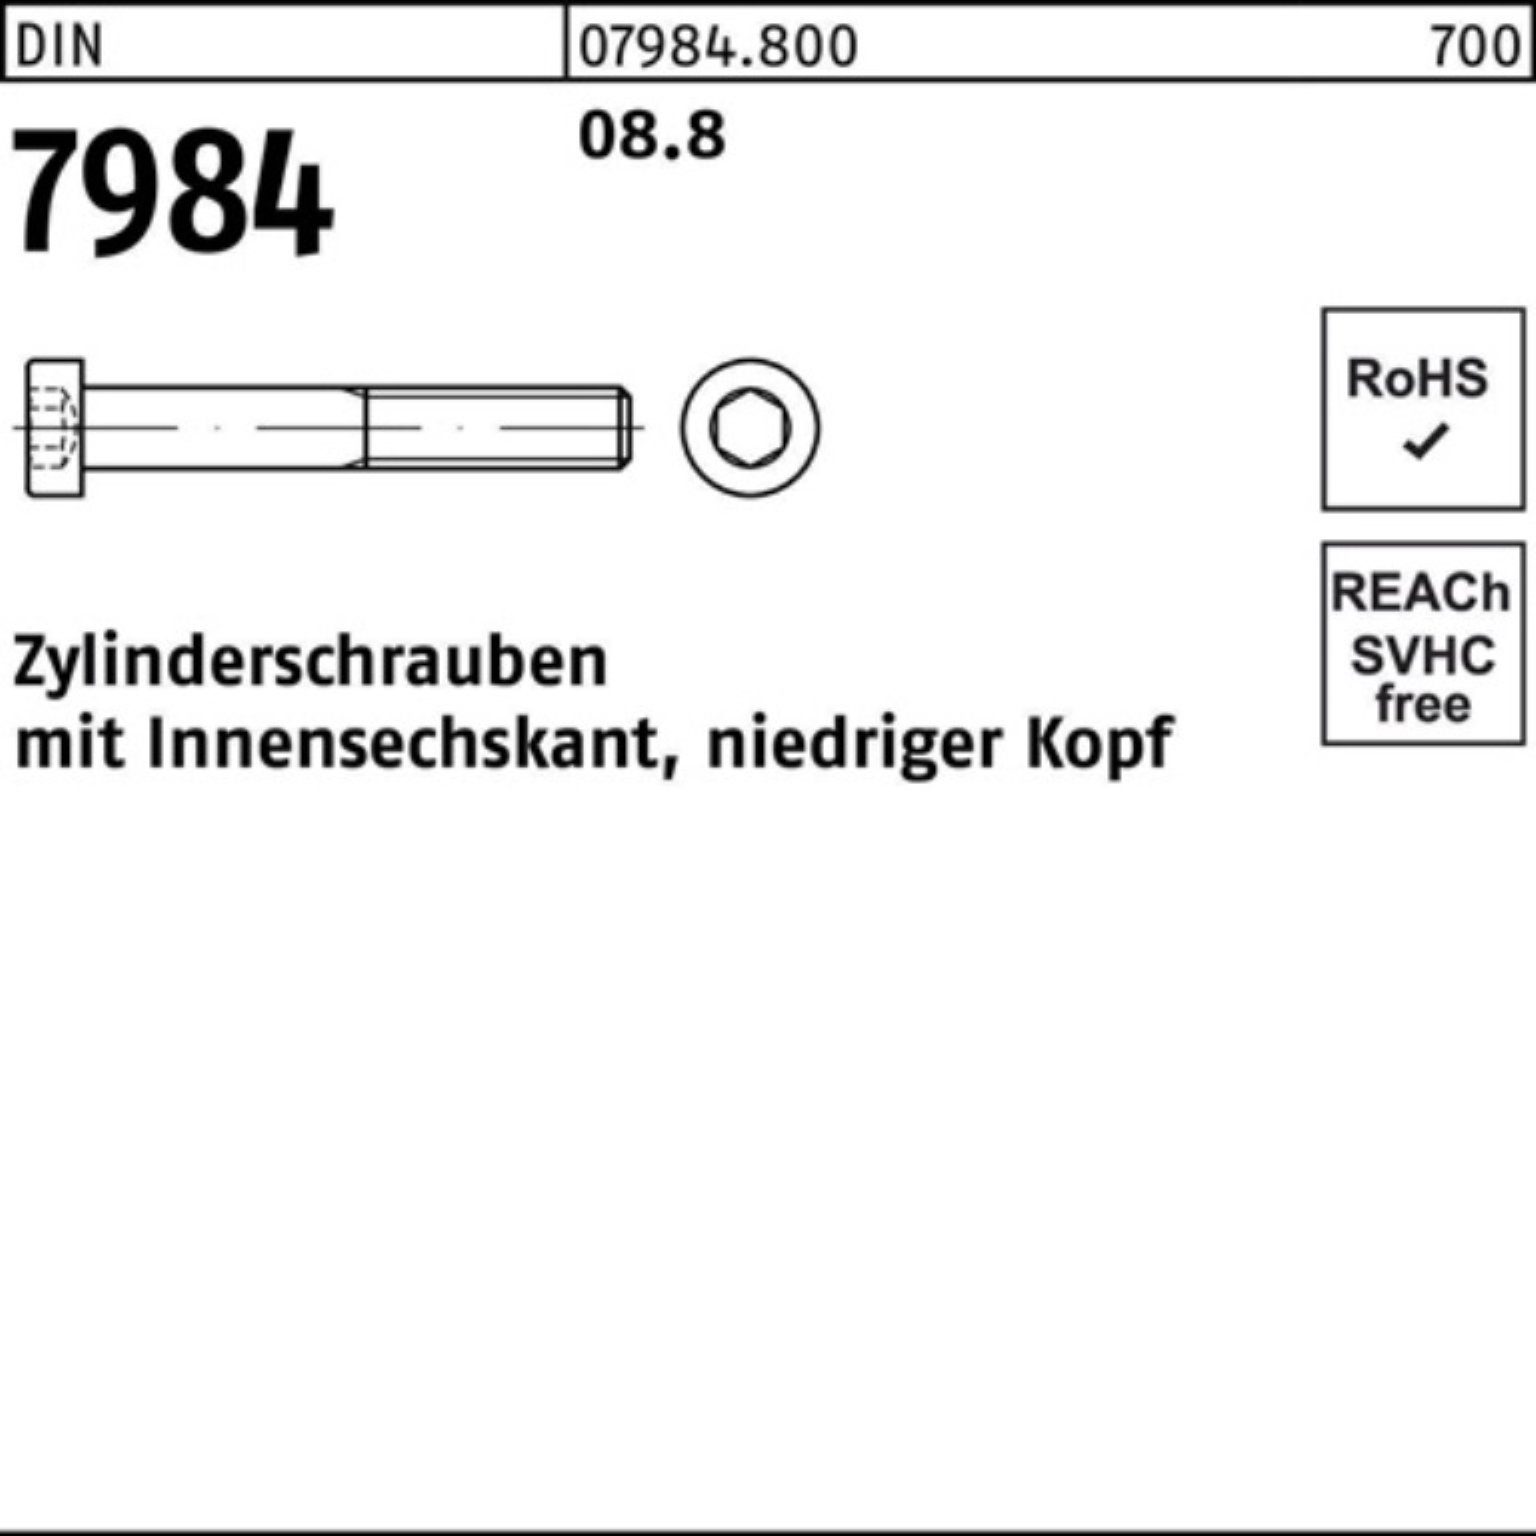 Zylinderschraube Pack Reyher Zylinderschraube Innen-6kt 8.8 D 7984 100 M4x 10 DIN 100er Stück